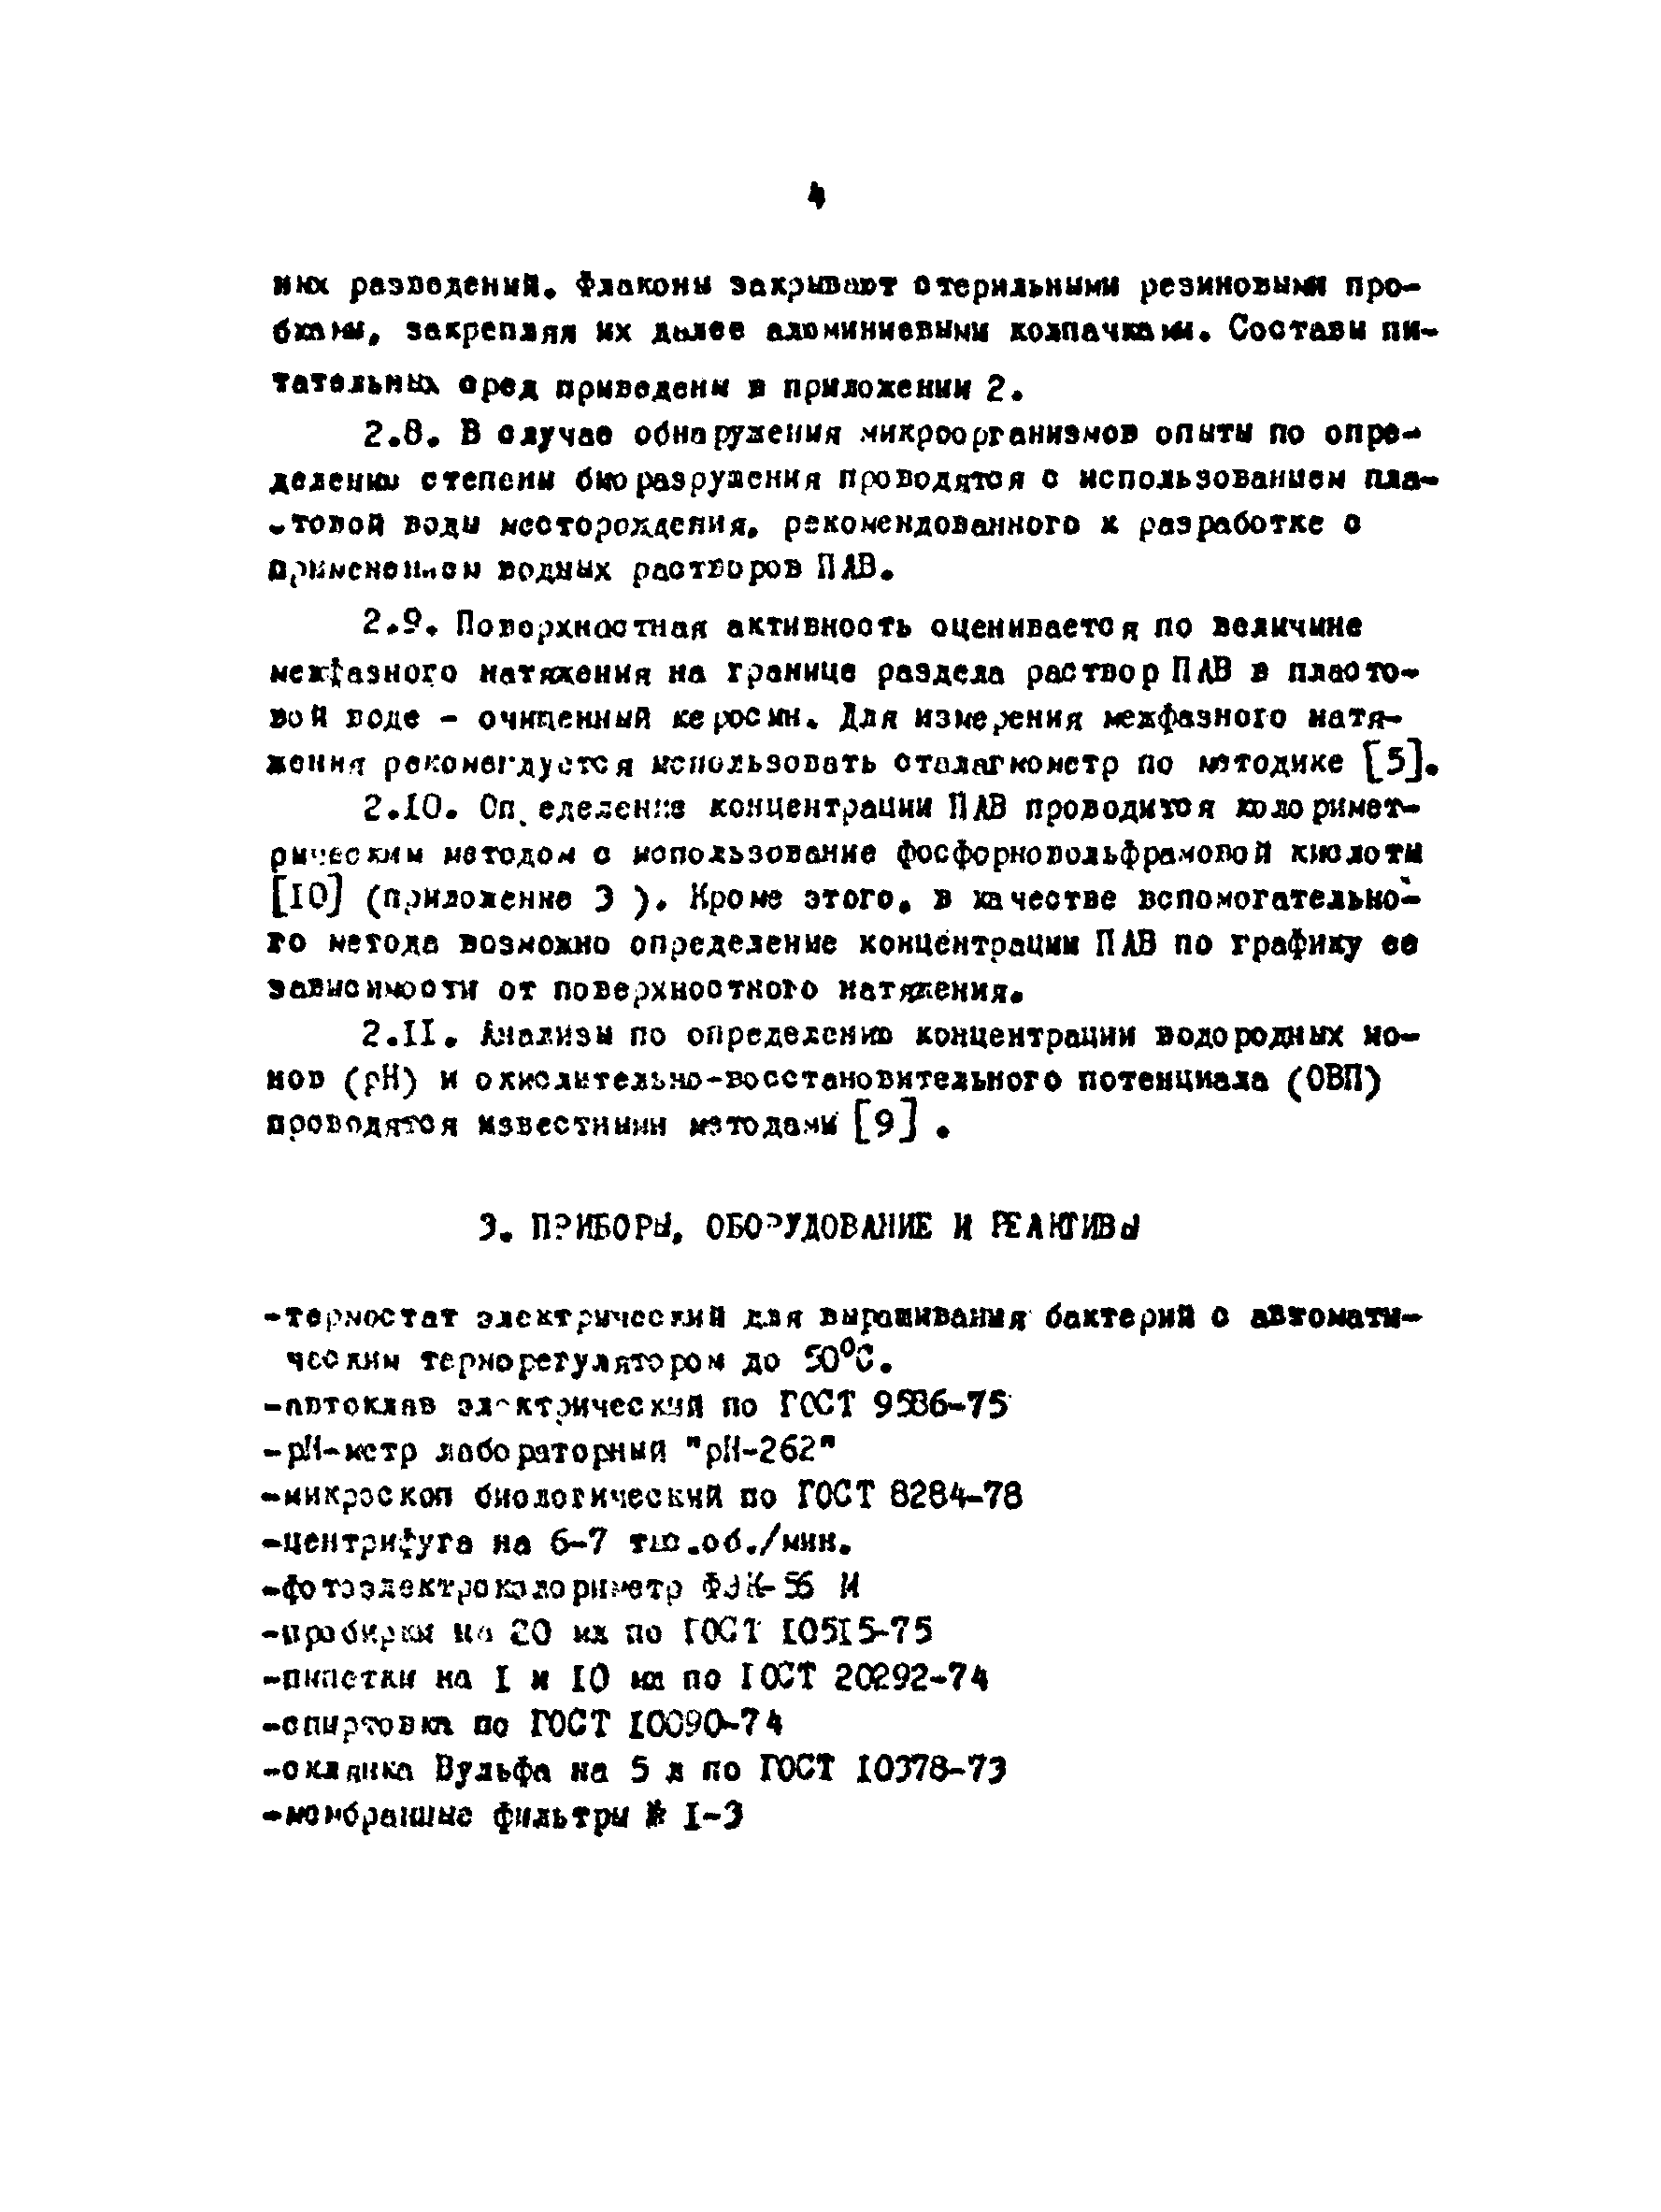 РД 39-23-749-82